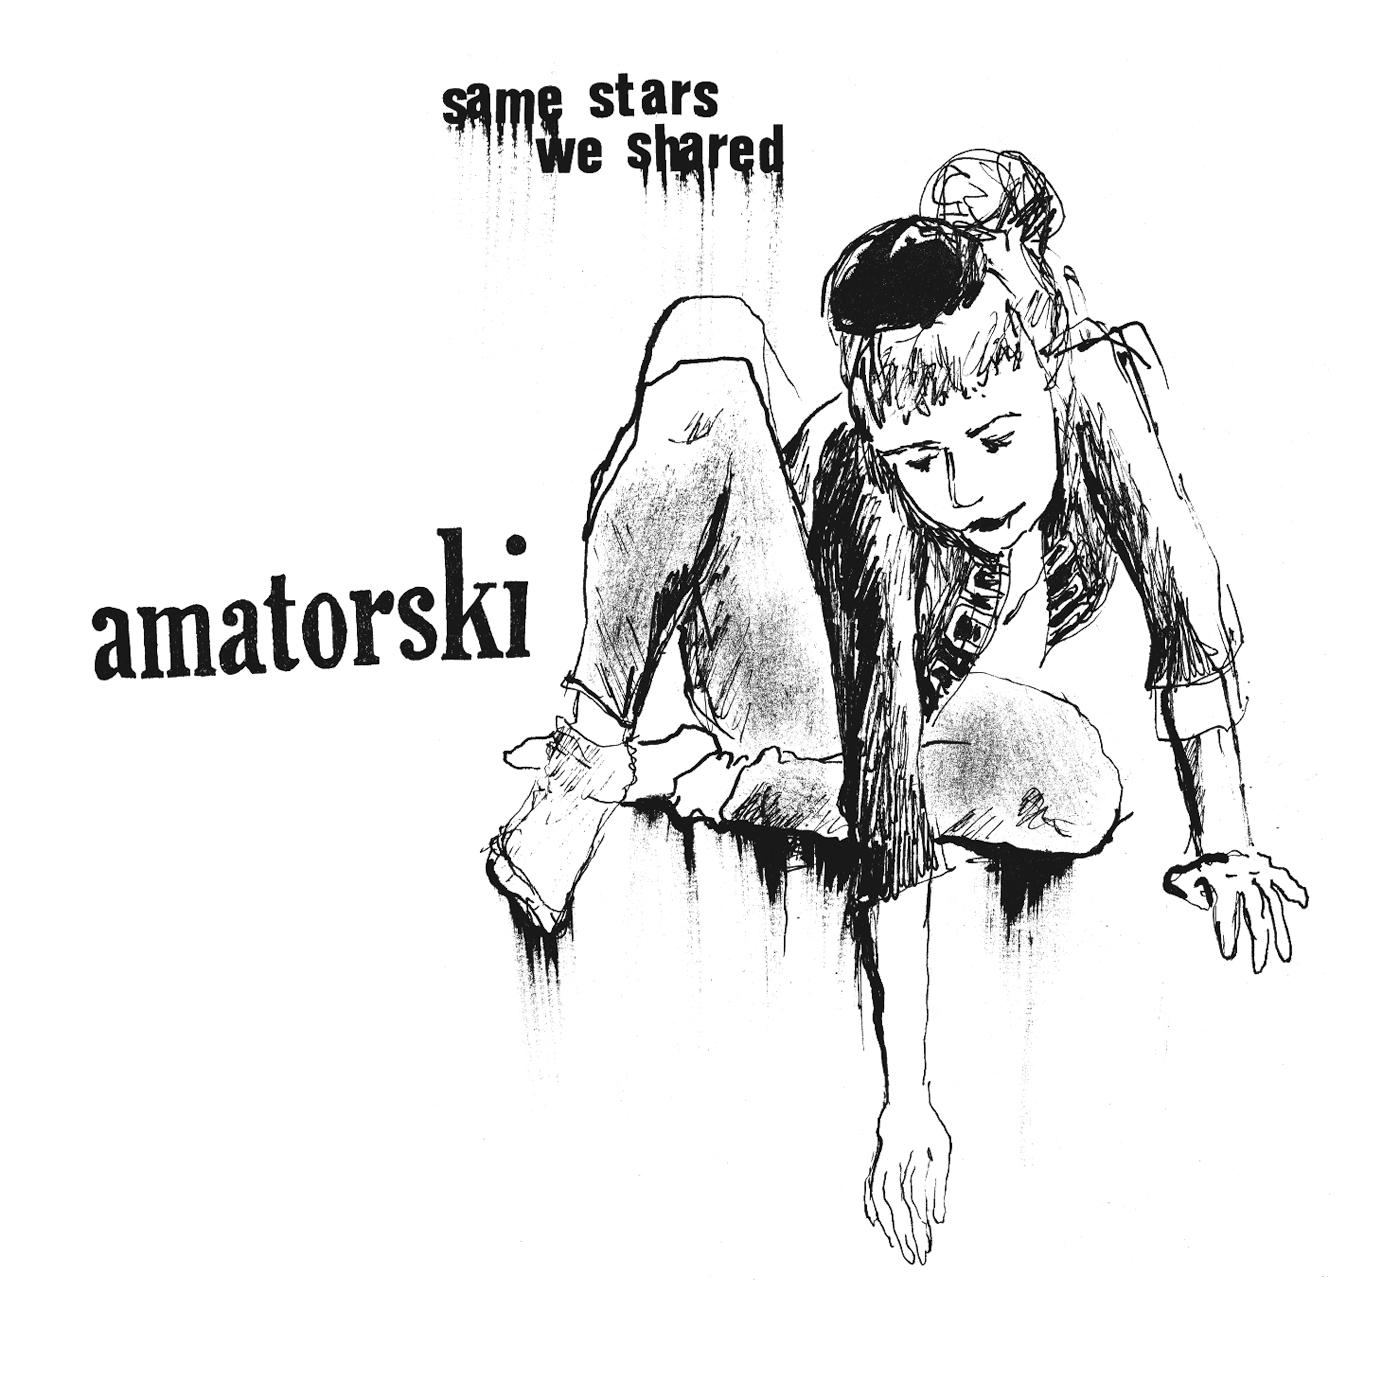 Come Home歌词 歌手Amatorski-专辑Same Stars We Shared-单曲《Come Home》LRC歌词下载